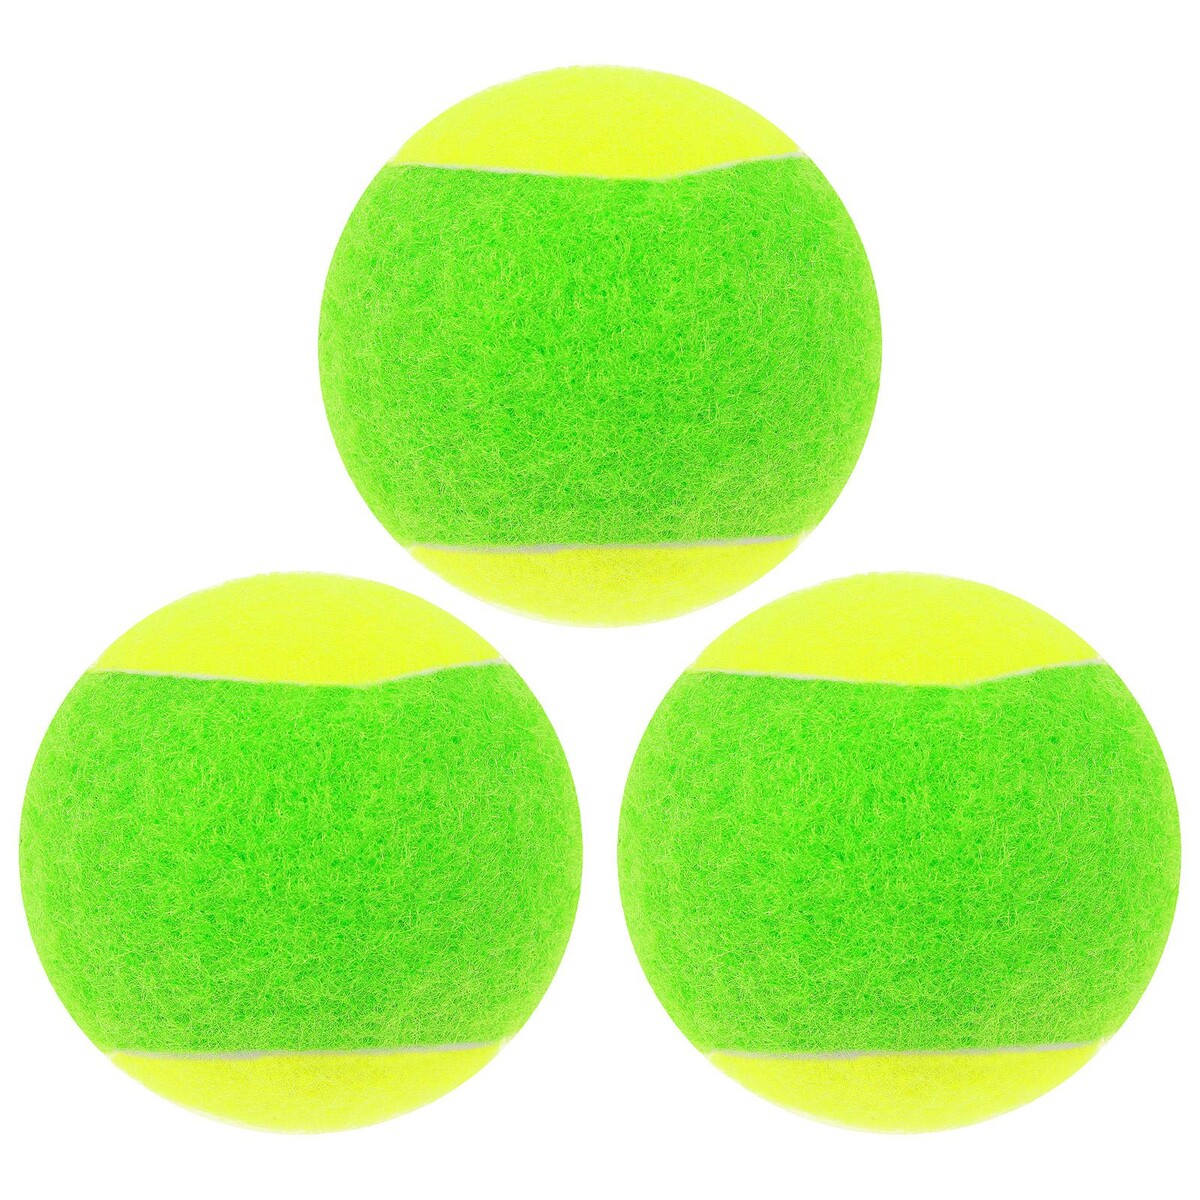 Набор мячей для большого тенниса onlytop swidon, 3 шт. мячи для большого тенниса swidon 919 3 штуки в тубе e29379